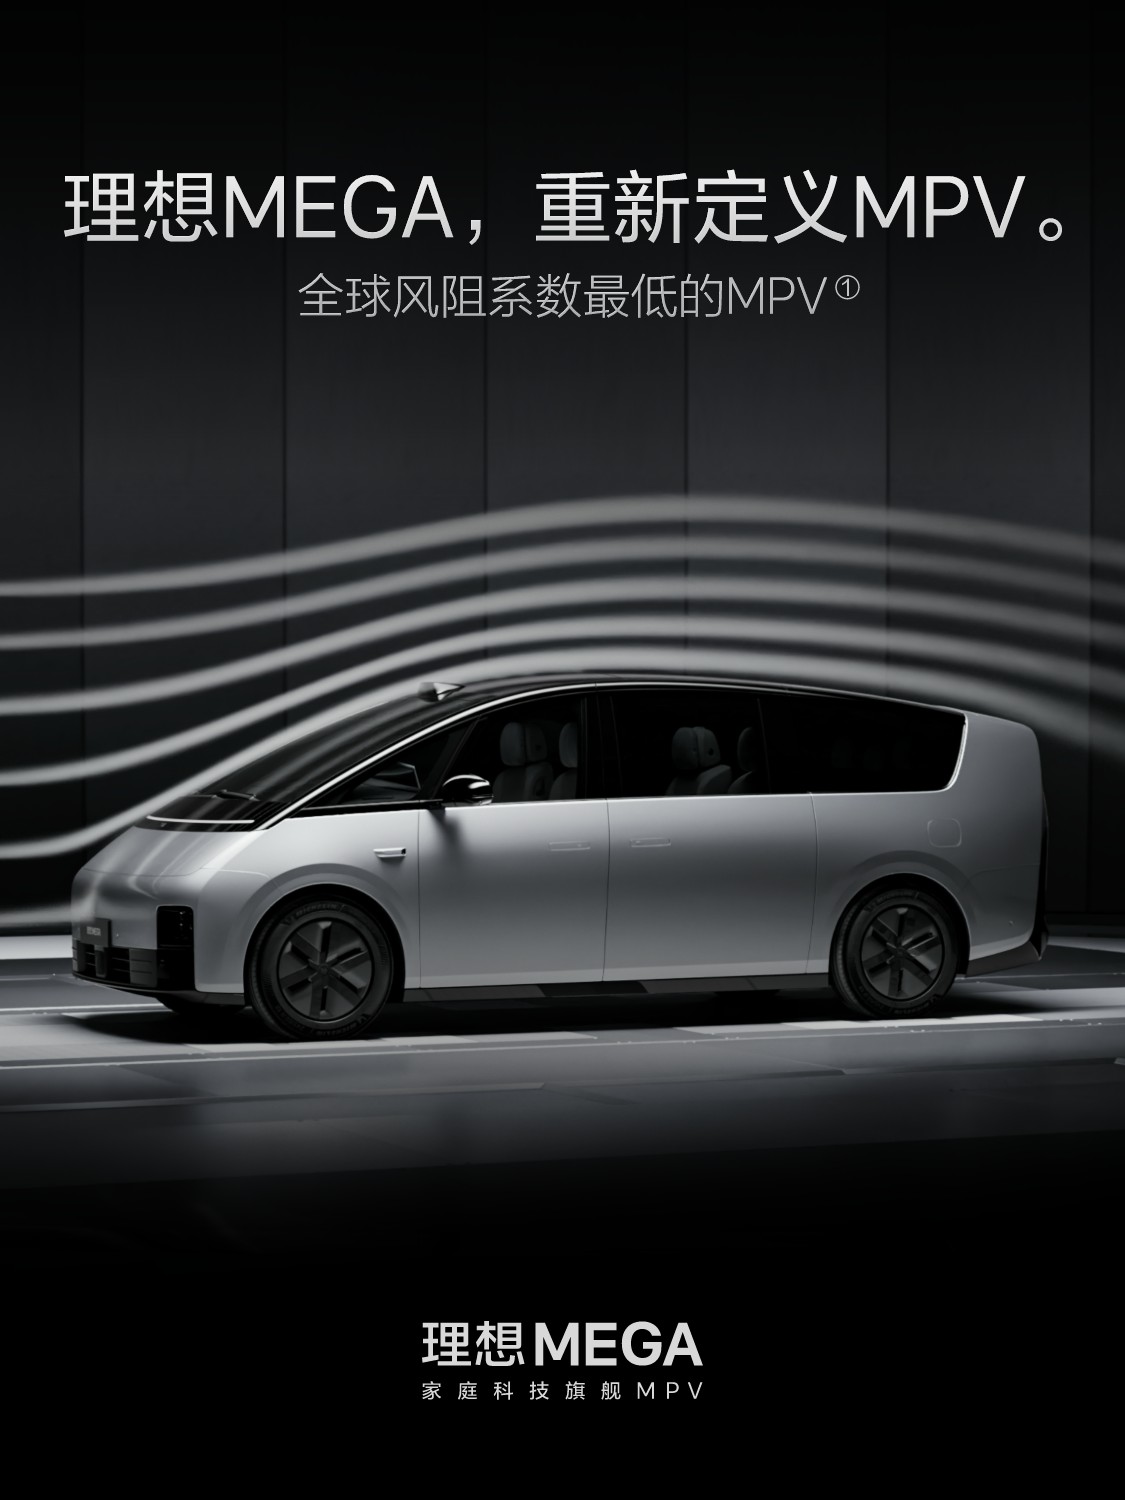 理想MEGA智能驾驶的实际表现还取决于“人机共驾”的默契程度_易车